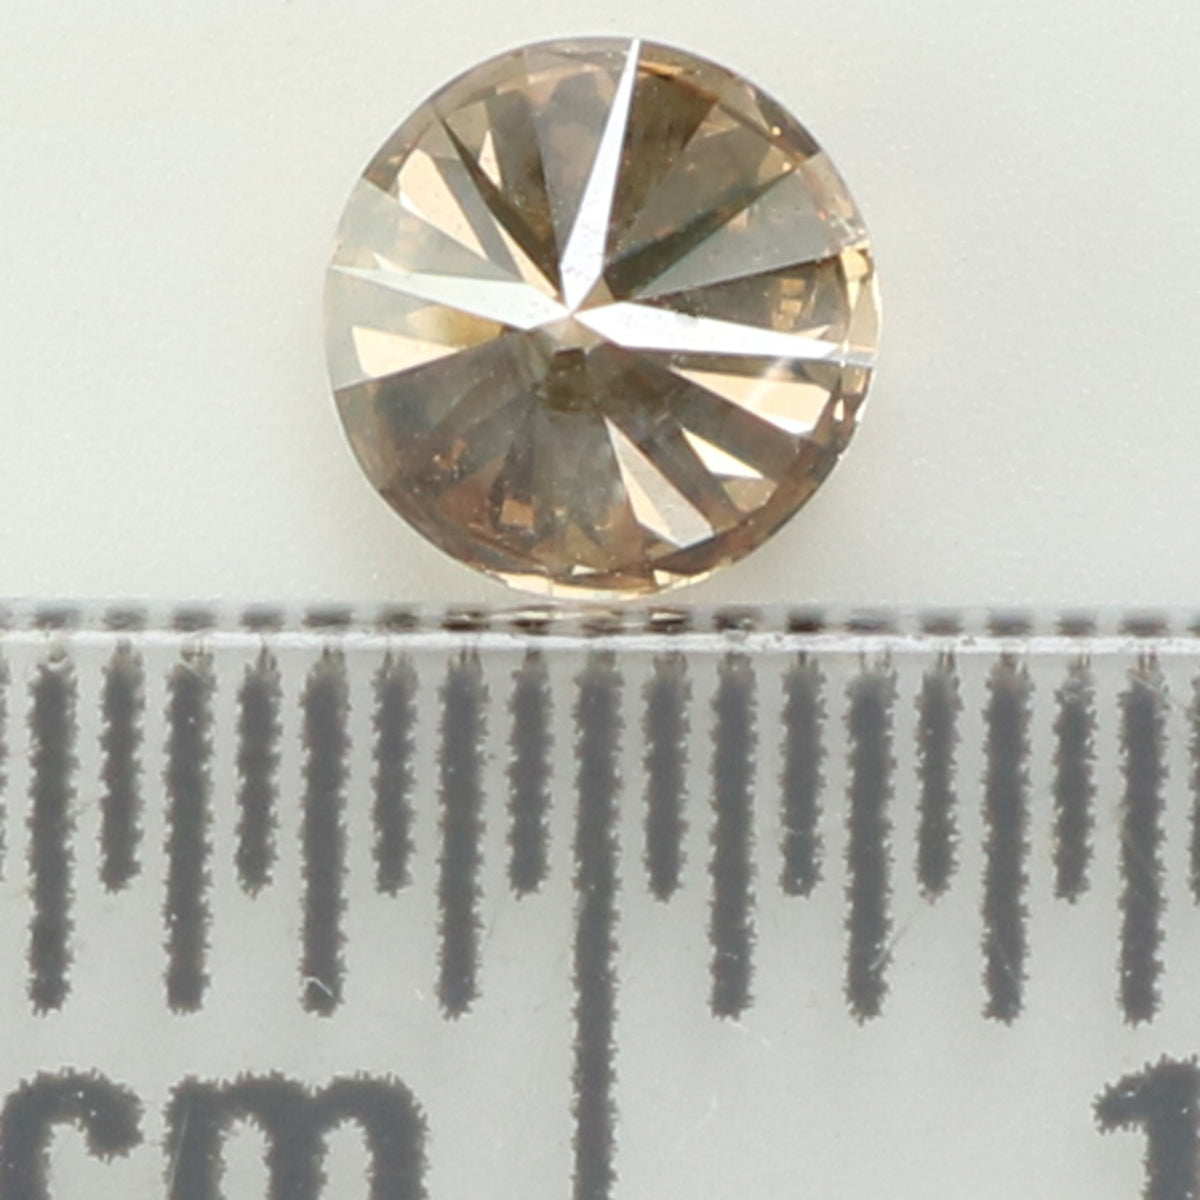 0.32 Ct Natural Loose Diamond, Brown Diamond, Round Diamond, Round Brilliant Cut Diamond, Sparkling Diamond, Rustic Diamond, L839